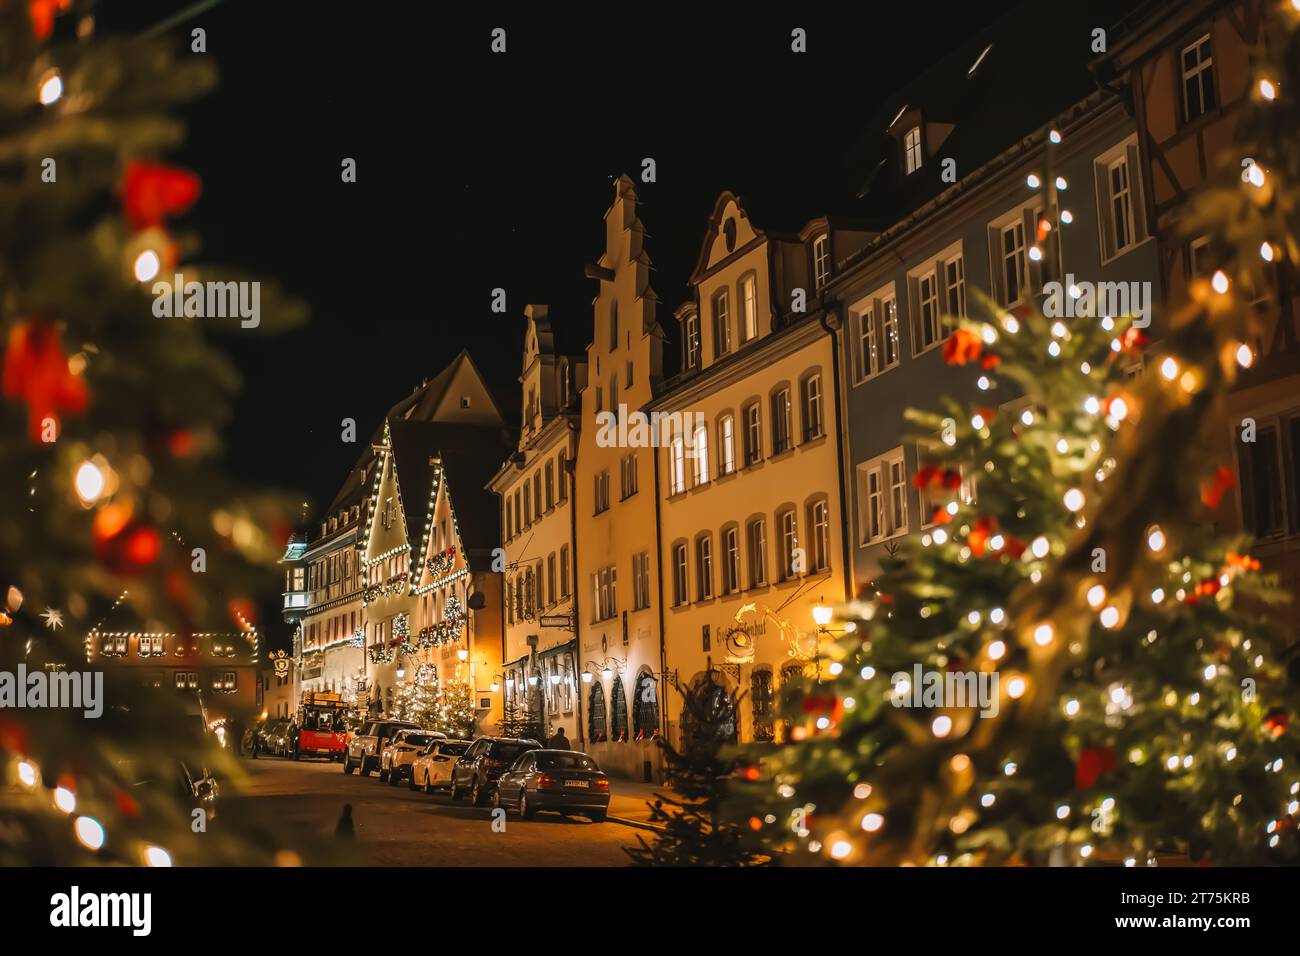 Rothenburg ob der Tauber. Weihnachtliche Stadt Hintergrund. Weihnachten in Europa. Weihnachtsbaum mit Kugeln und glänzenden Girlanden. Weihnachtsabend Platz mit Stockfoto